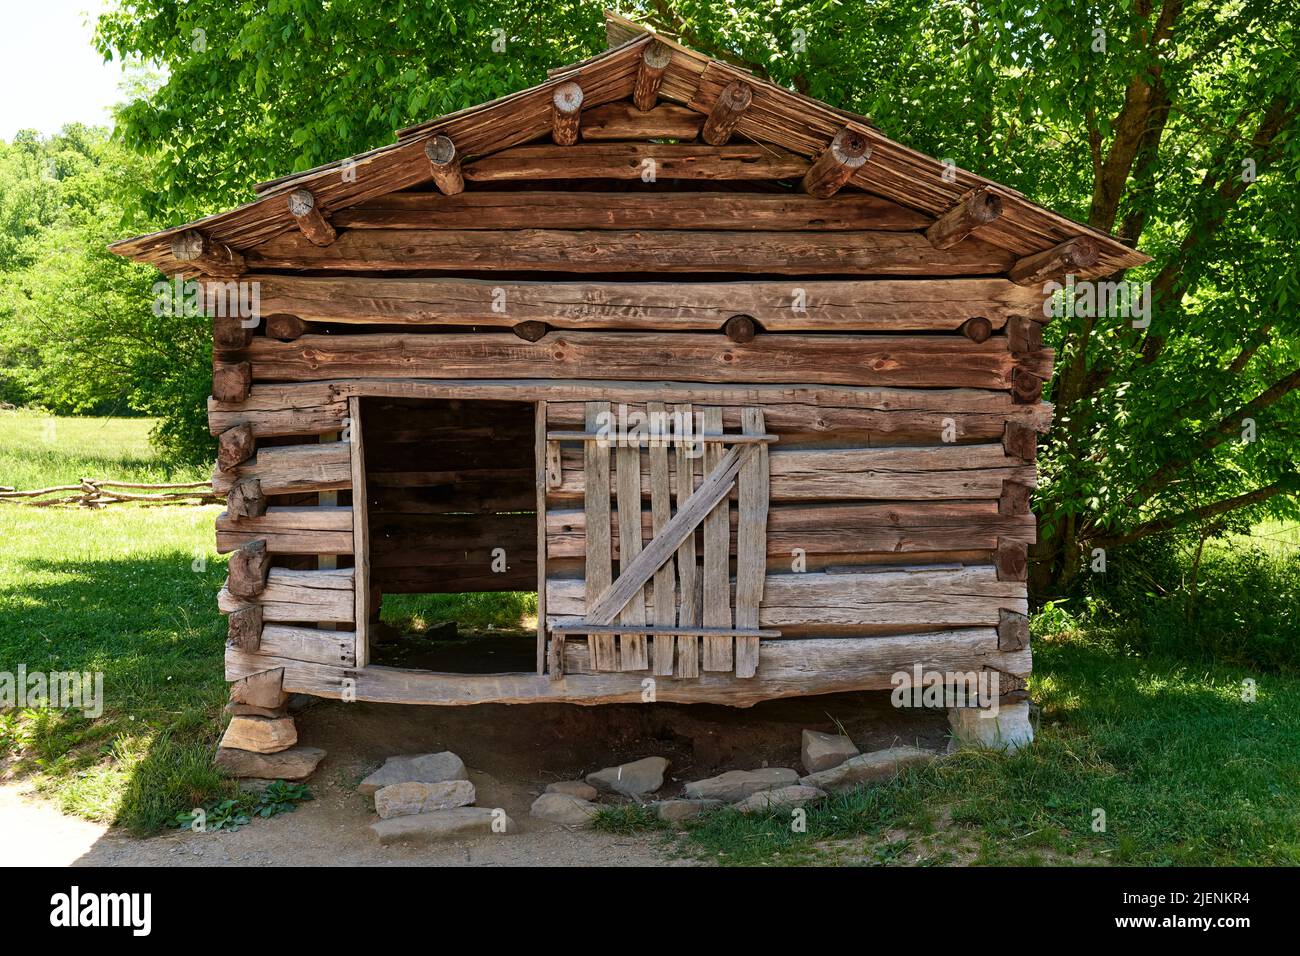 Antiguo edificio de madera rústica utilizado como una casa de secado de tabaco o granero de tabaco en Cades Cove Tennessee, Estados Unidos. Foto de stock